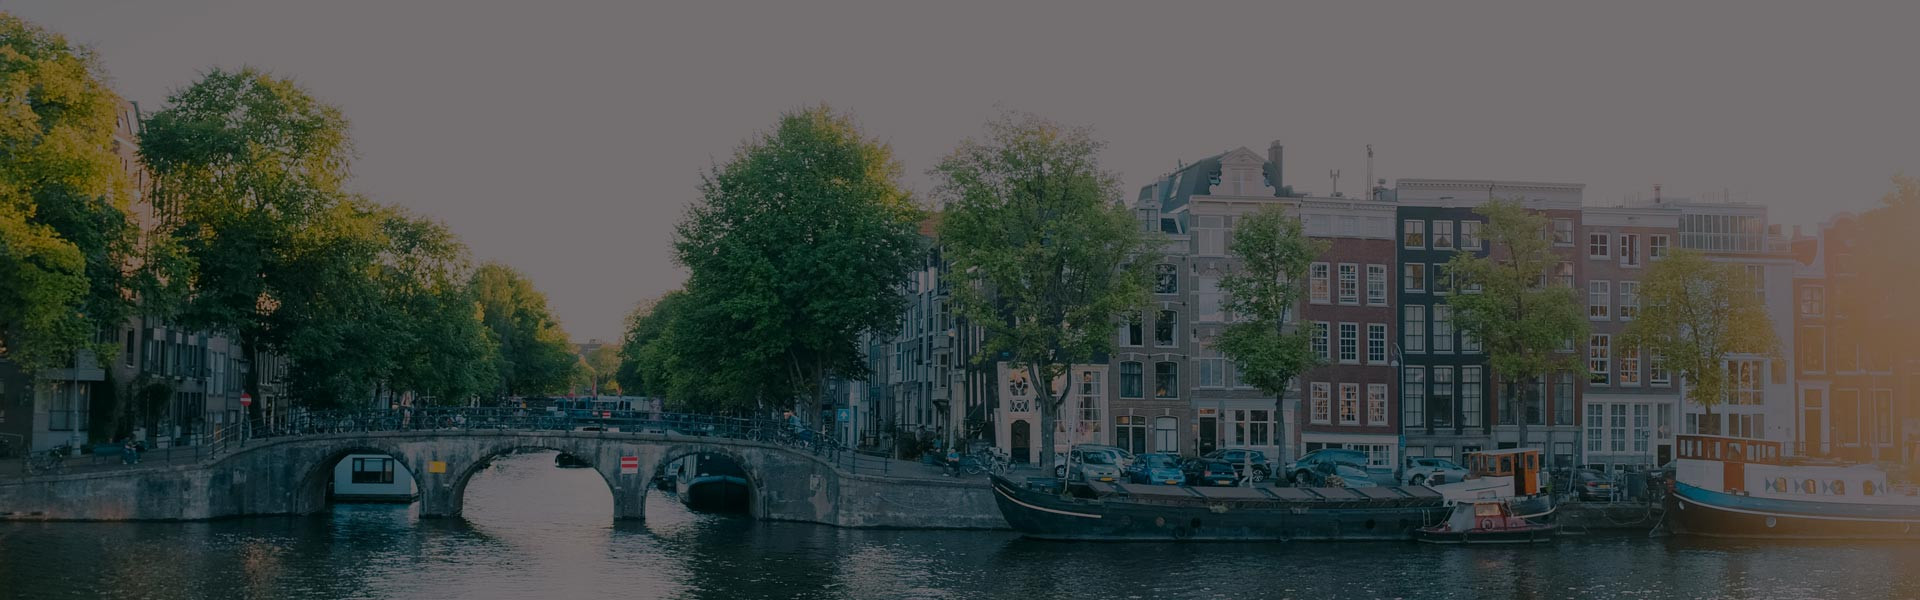 Gracht in Amsterdam mit charismatischen Häusern im Hintergrund